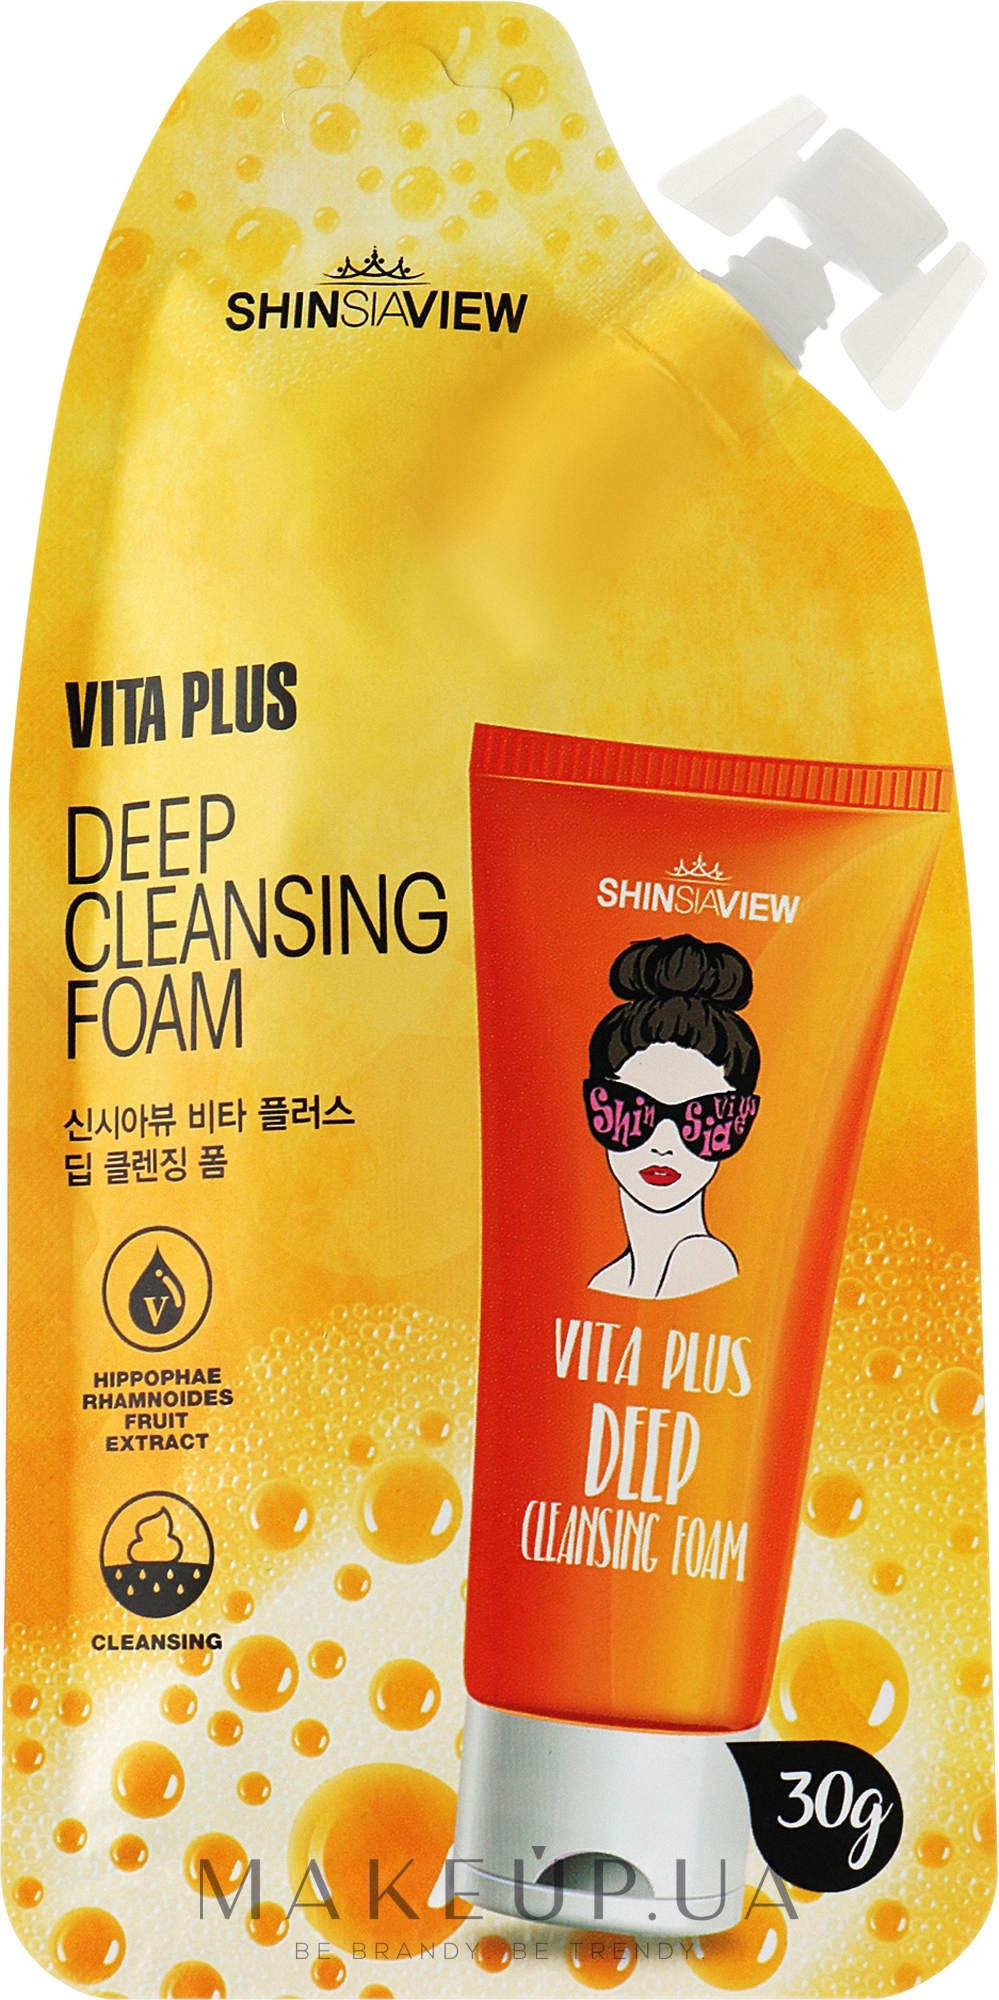 Пенка для умывания - Shinsiaview Vita Plus Deep Cleansing Foam — фото 30g